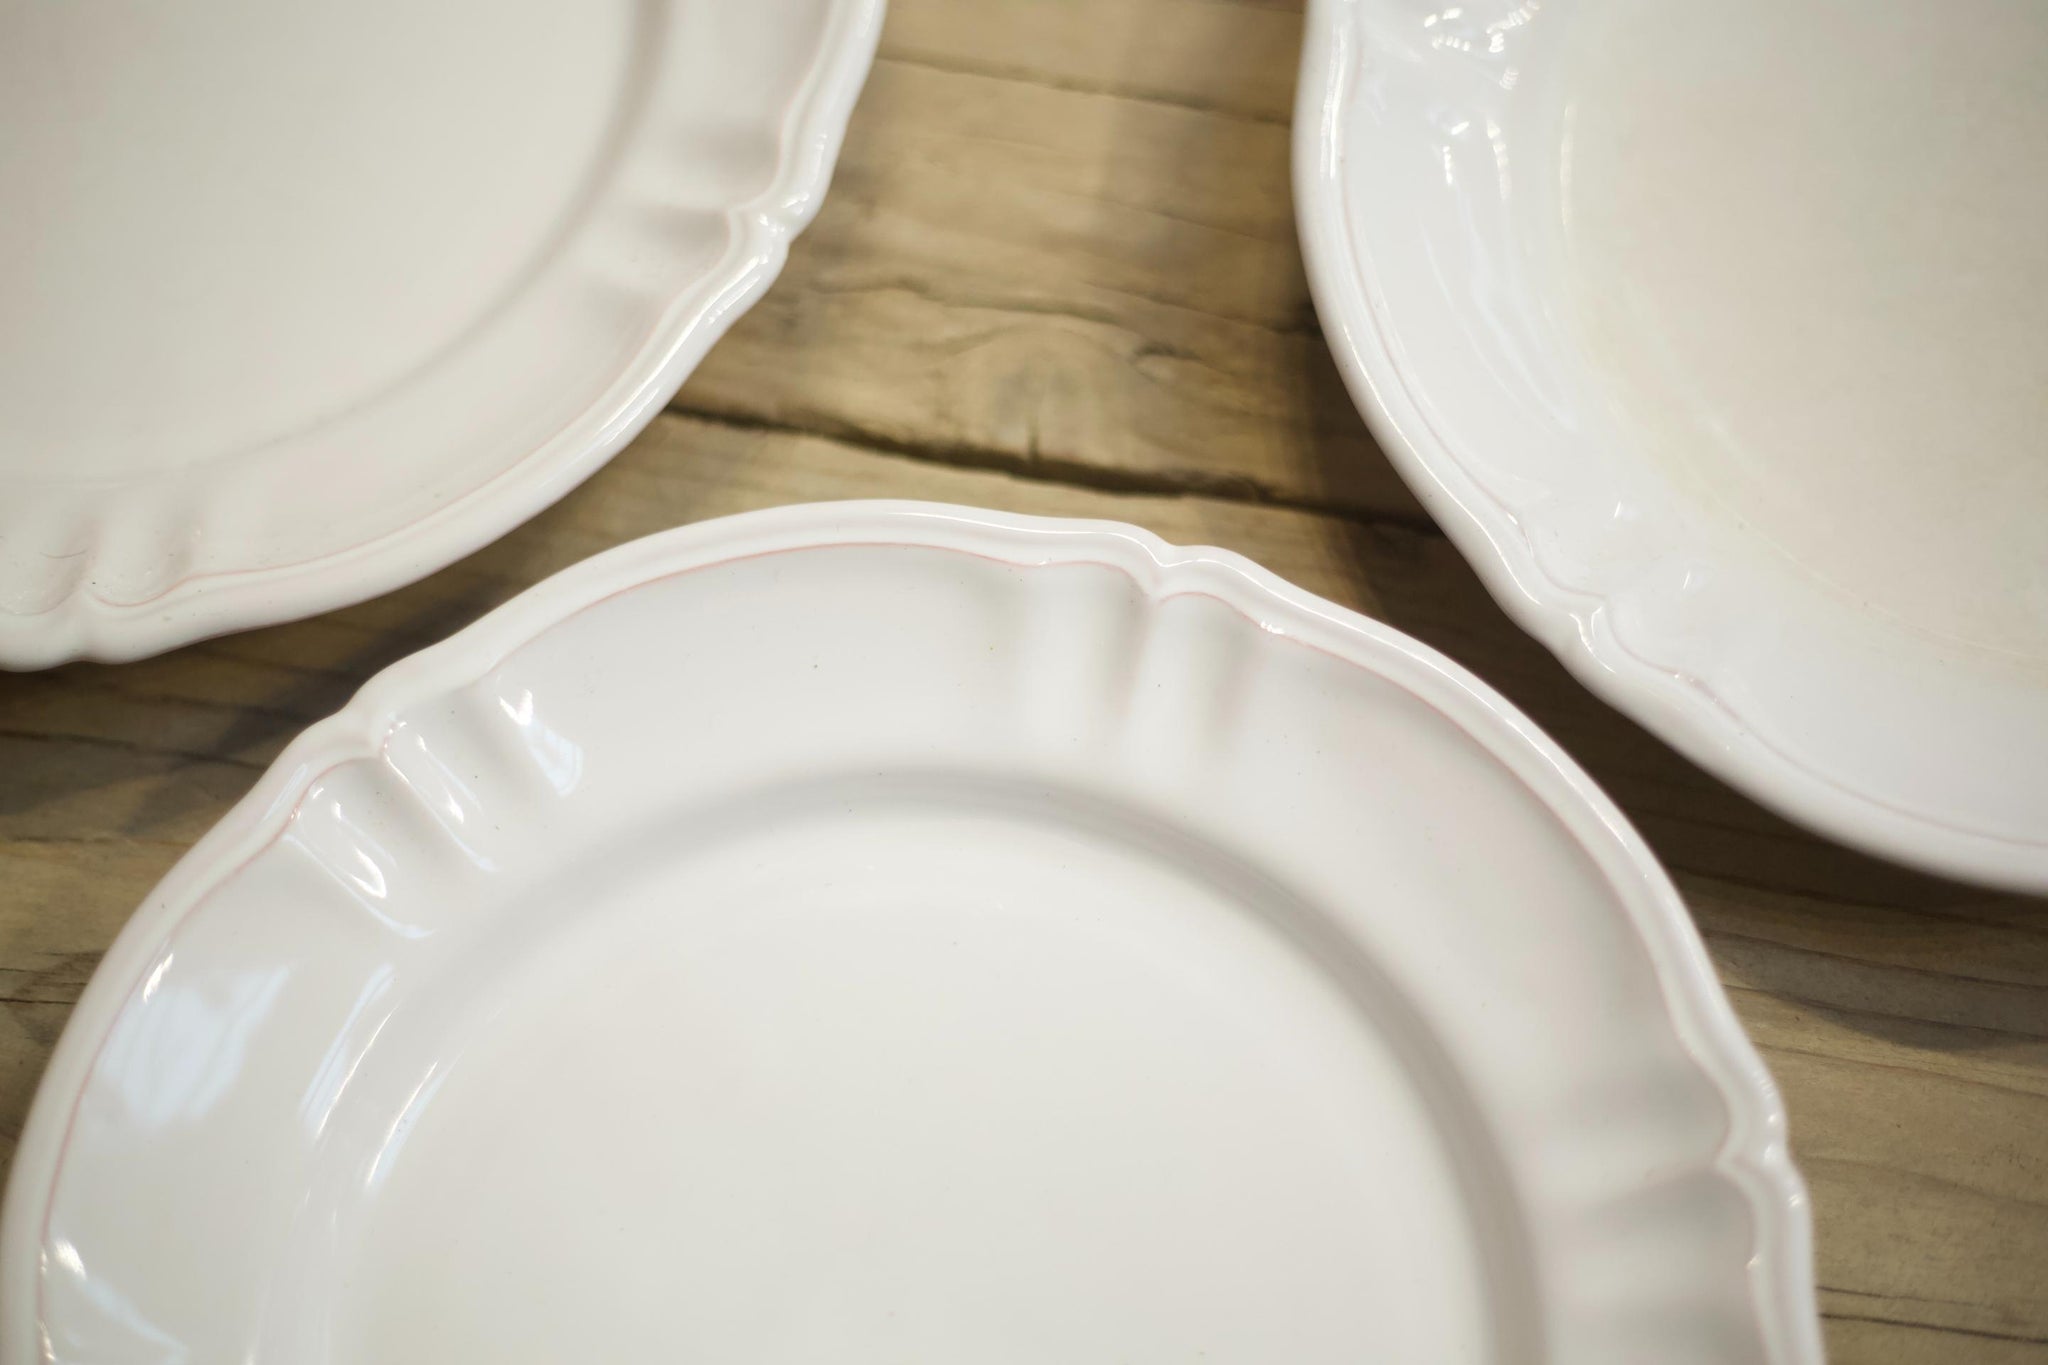 Vintage French White porcelain dinner plates - pink edge